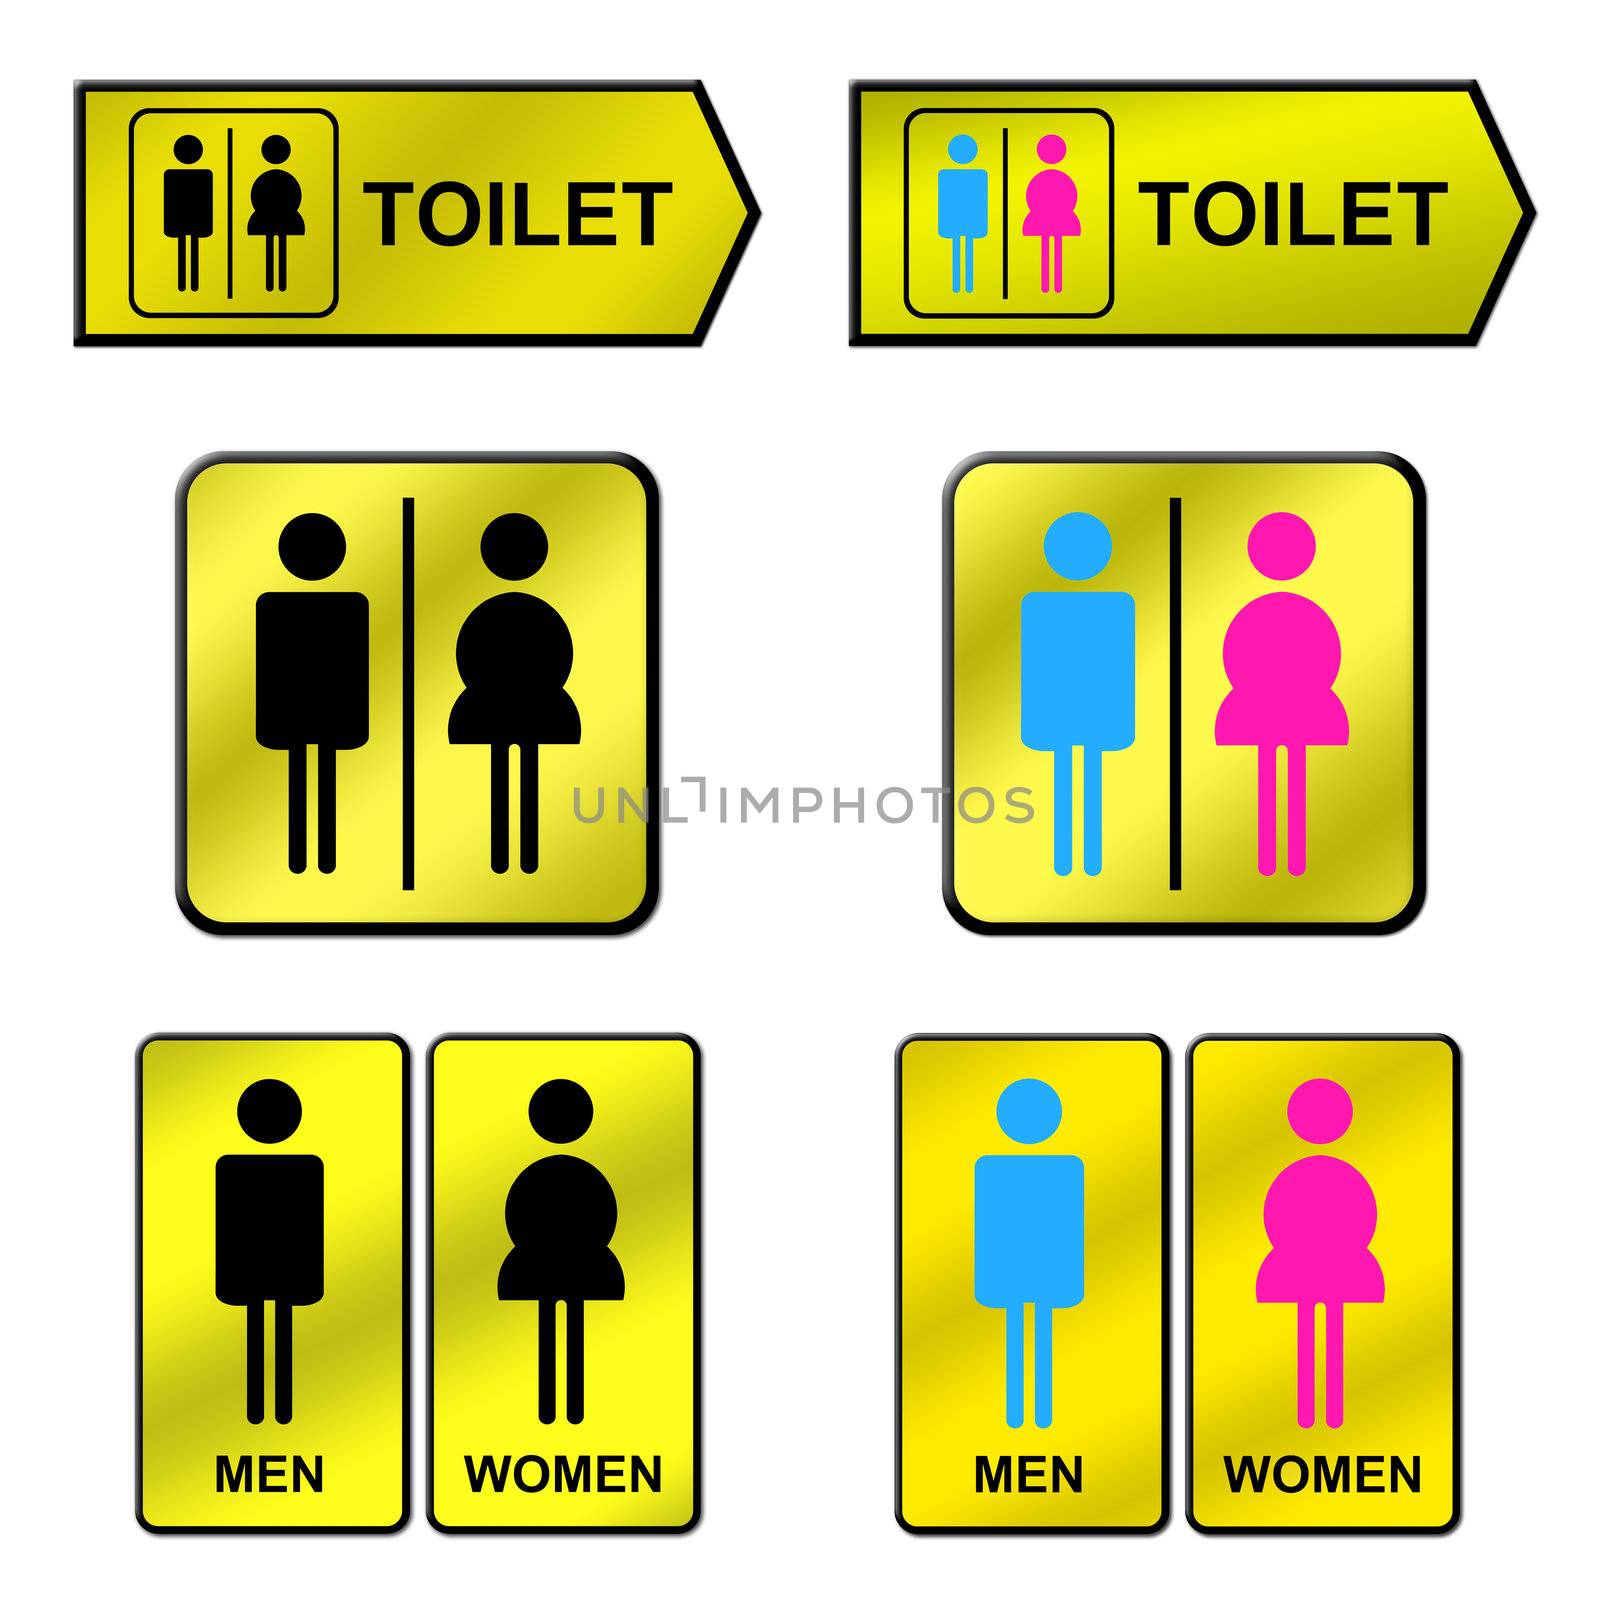 6 golden toilet sign on white